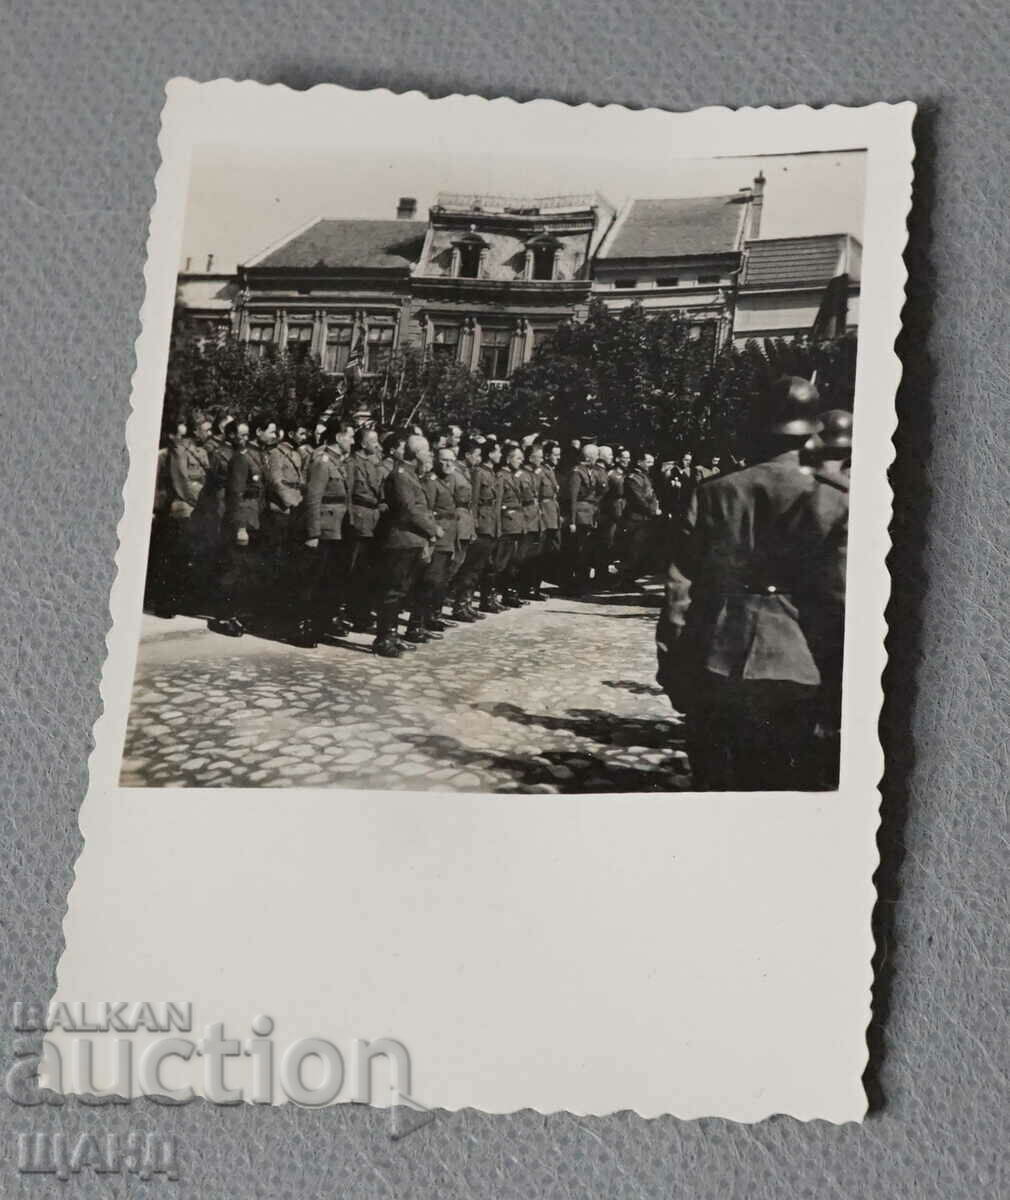 1943 Foto sărbătoarea H.V.C.Simeon II 25 p.Divizia